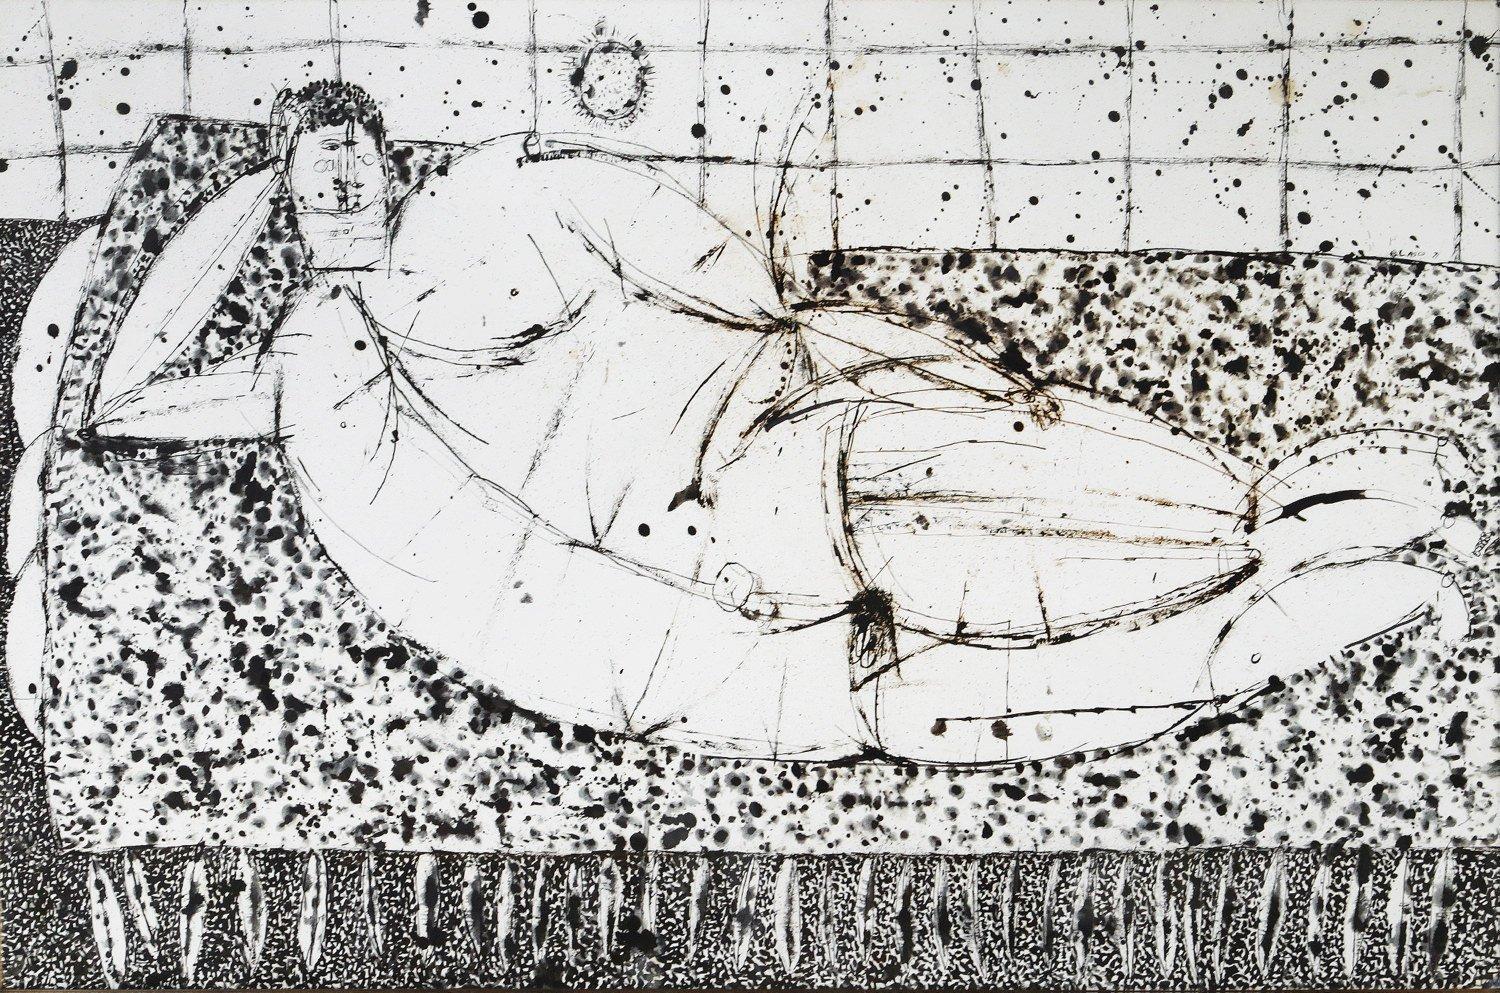 Figurative Art Joseph Glasco - Figure masculine nue couchée, dessin à l'encre figuratif d'un artiste expressionniste new-yorkais